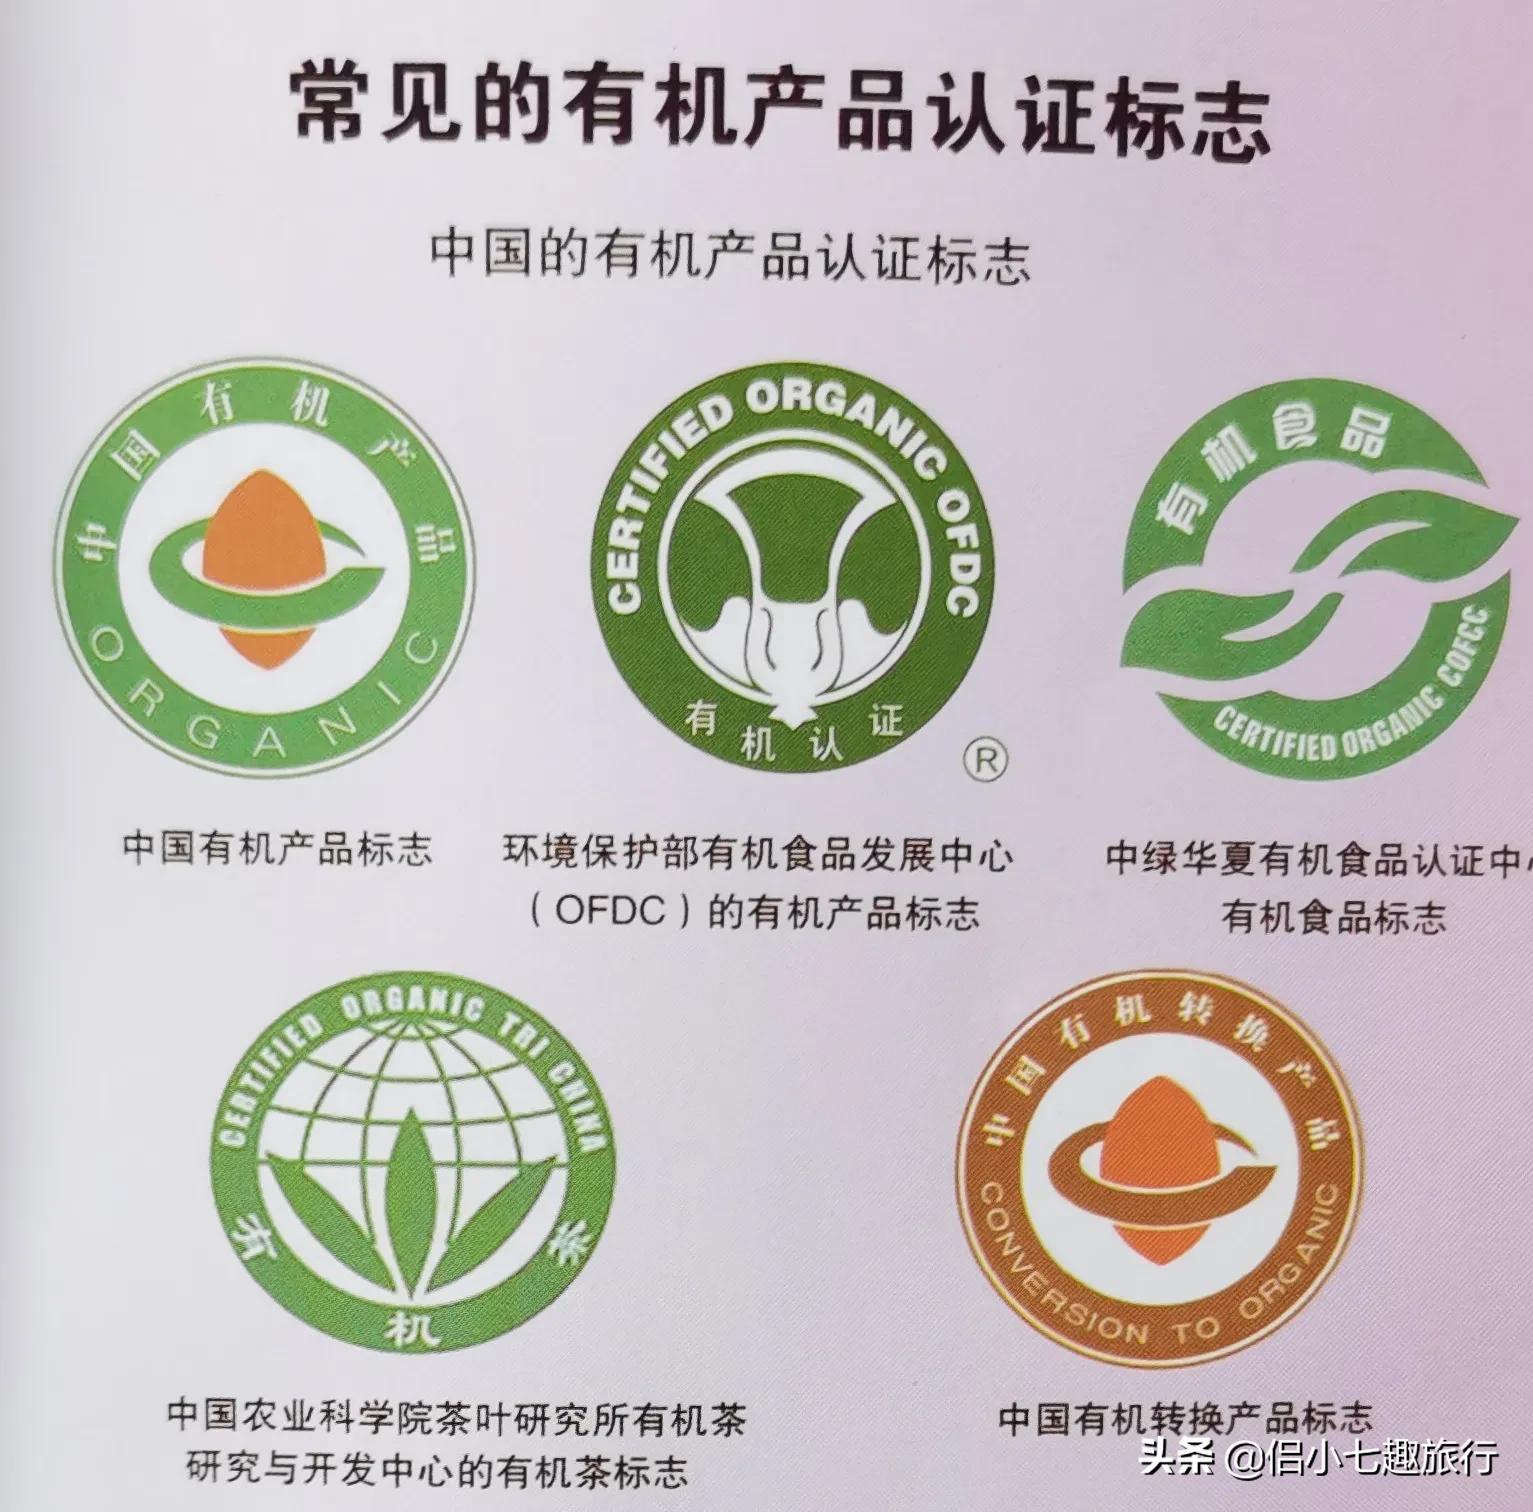 国际有机农业运动联盟(IFOAM)成立于1972年